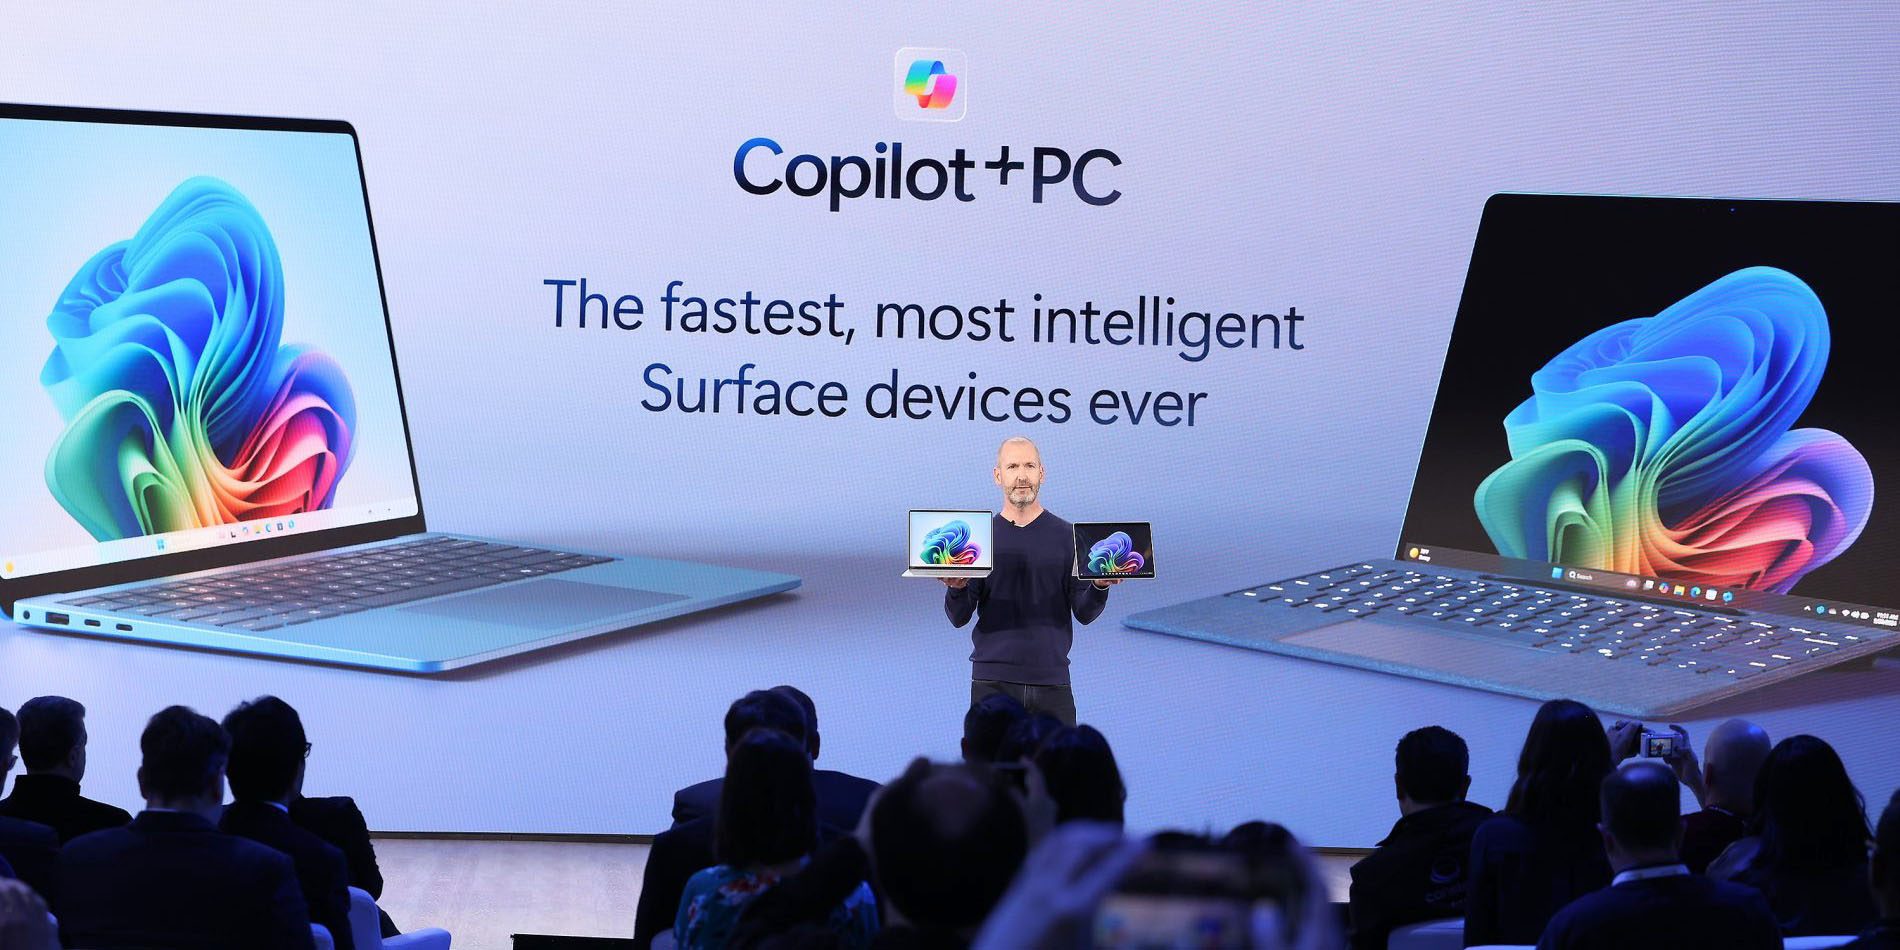 MacBook Air de Microsoft |  Las PC Copilot+ aparecen en el escenario